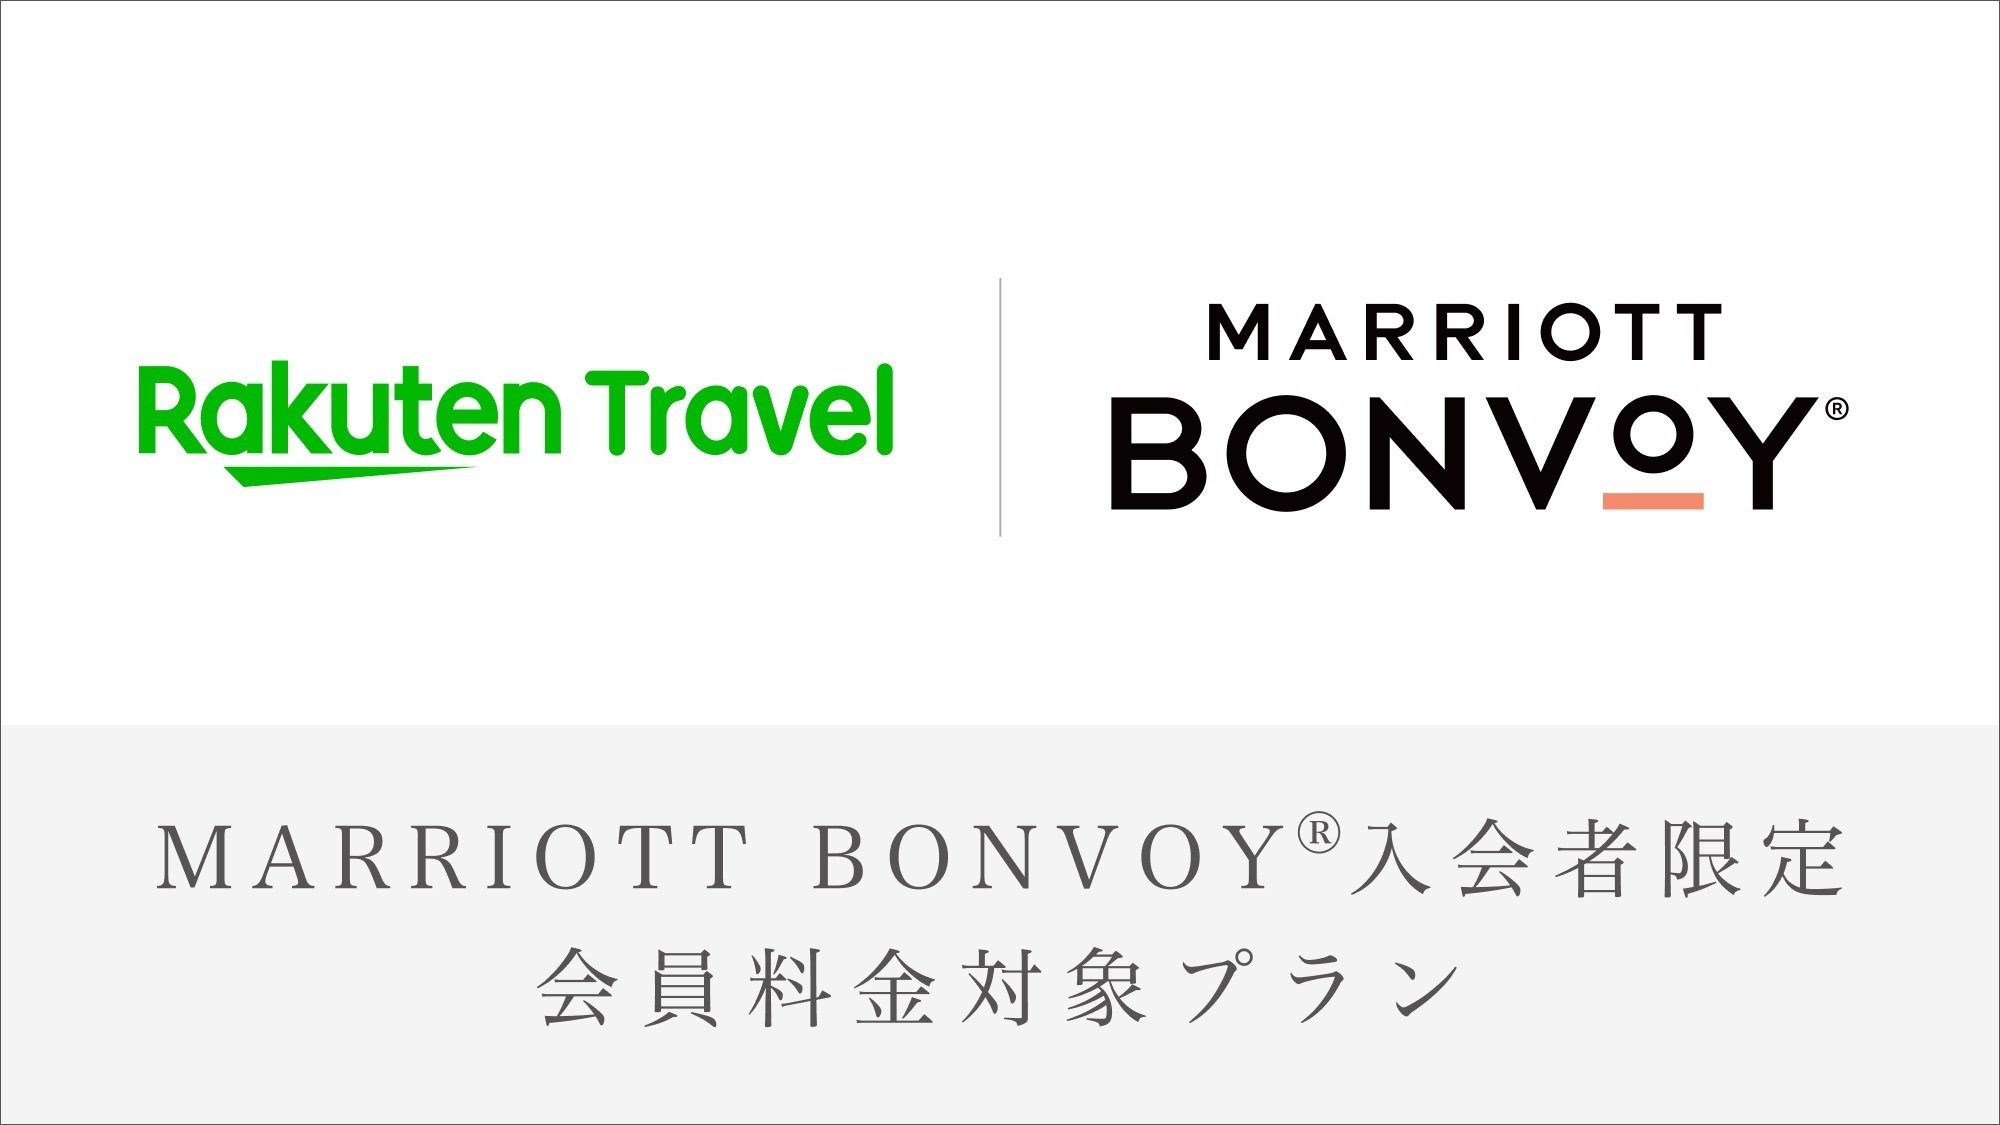 【Marriott Bonvoy会員価格対象プラン】エグゼクティブスイートルーム/クラブ特典付